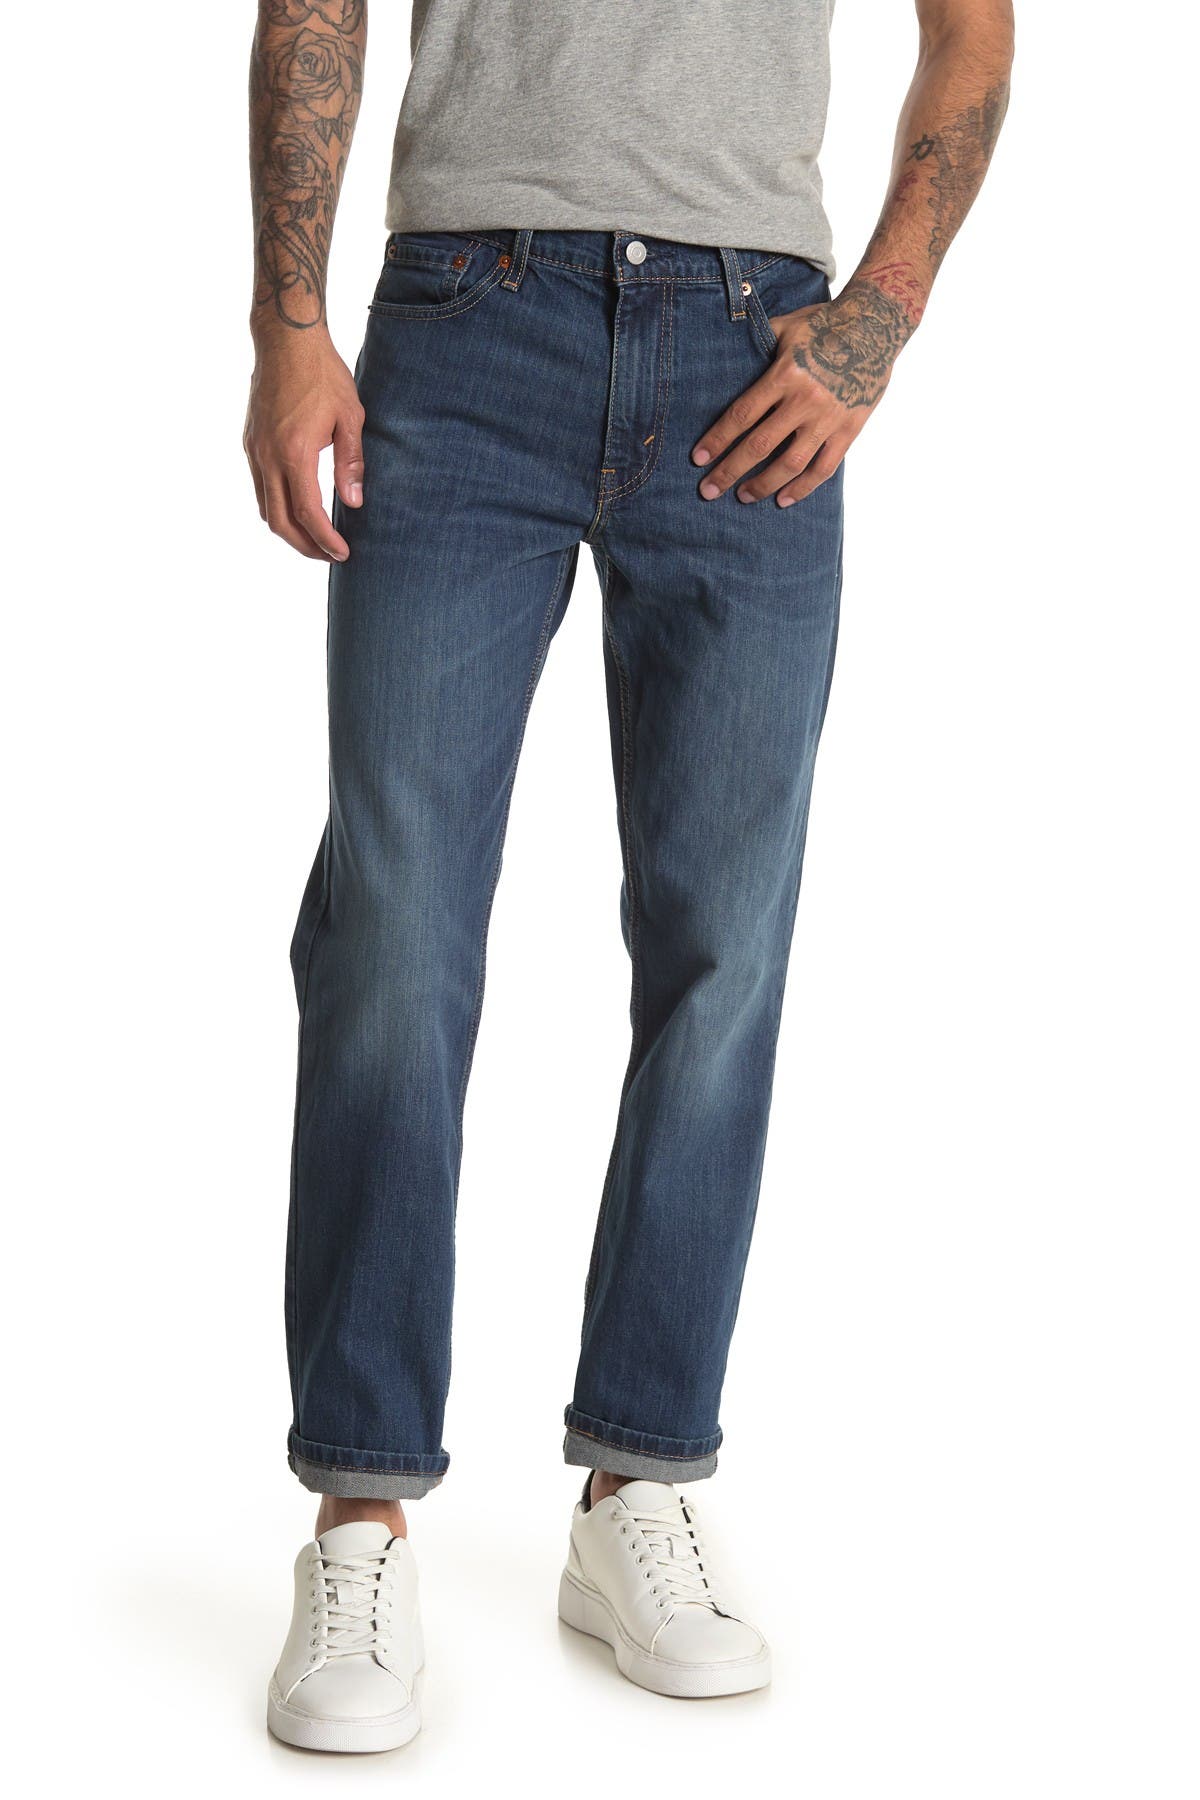 Levi's | 511 Slim Fit Throttle Jeans - 30-34